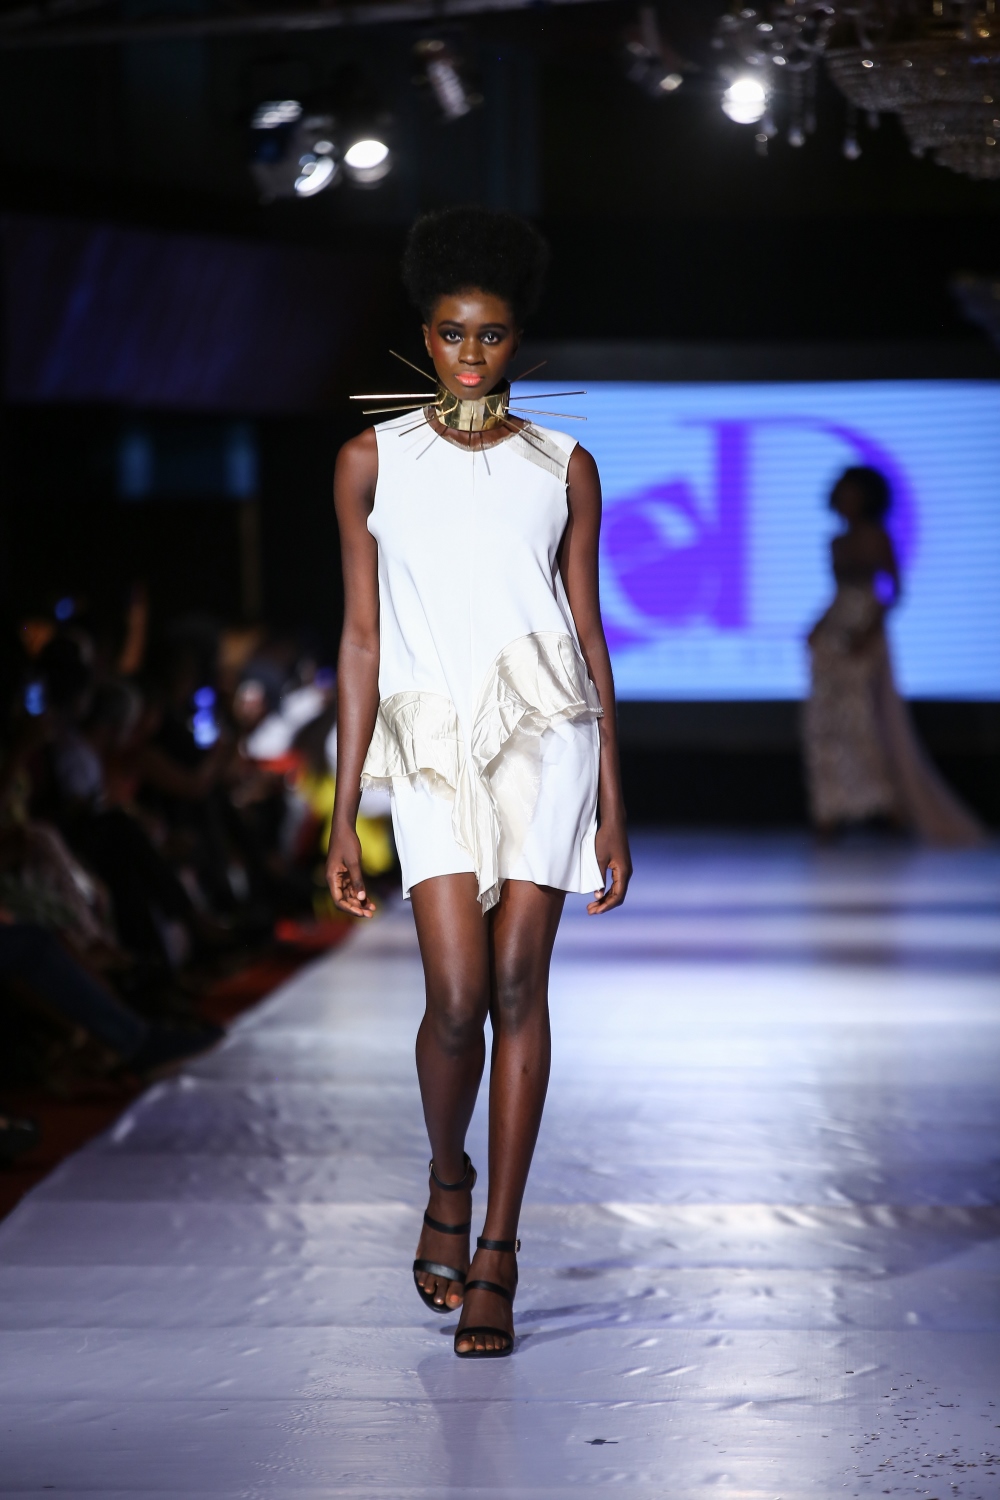 #AFWN17 | Africa Fashion Week Nigeria DAY 2: Eve Designs